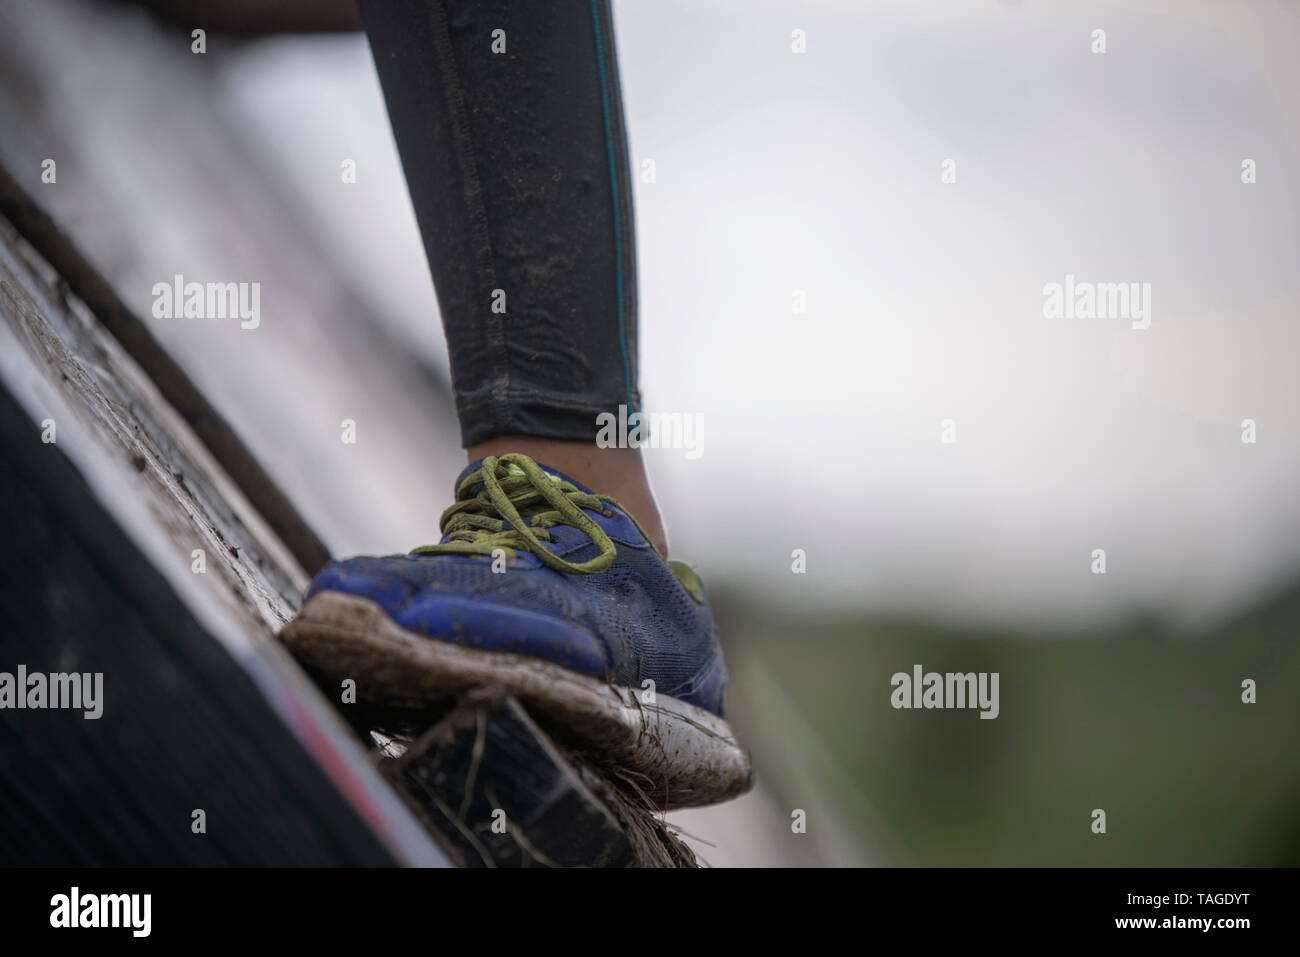 SOFIA, Bulgarien - 7. JULI 2018: Ist ein Mädchen Fuß gegen einen nassen schmutzige Wand versucht ein Hindernis in einer Stärke Rennen zu überwinden Stockfoto